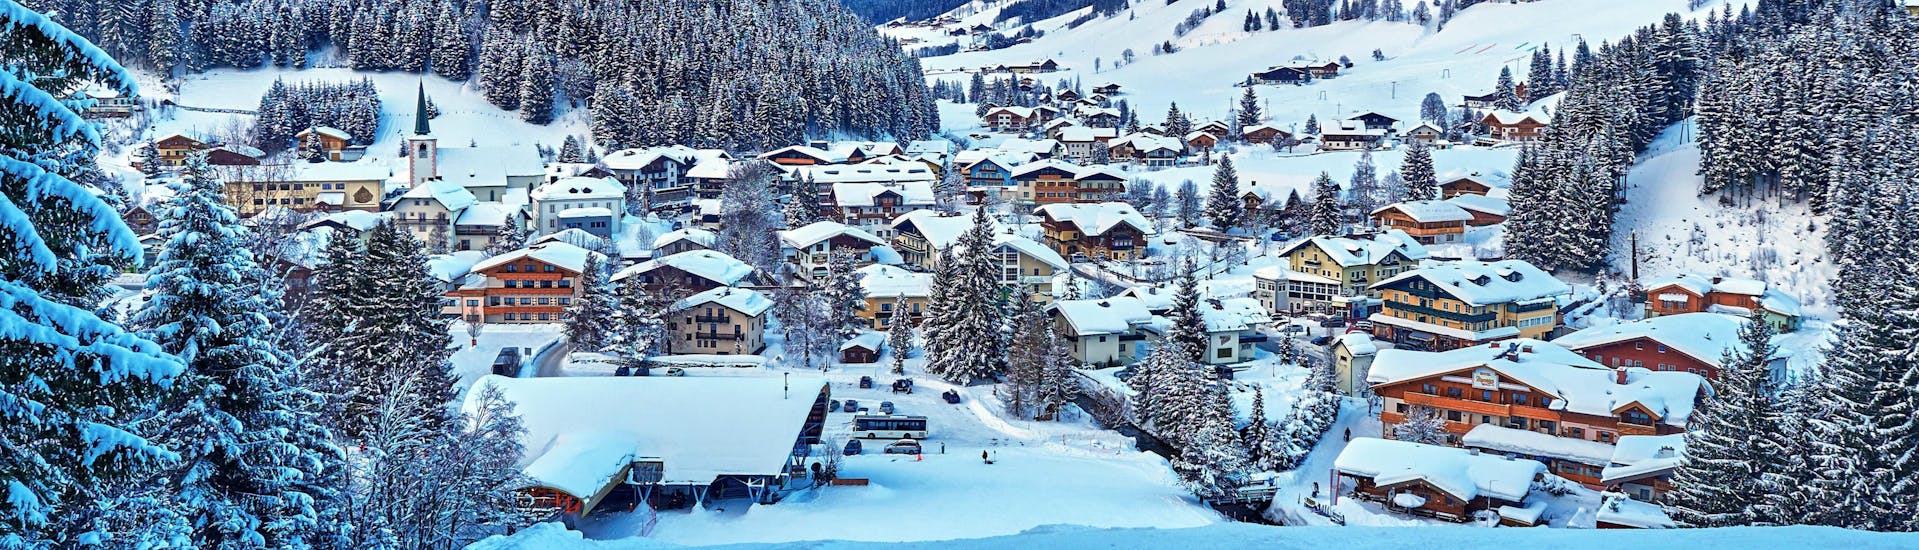 Tijdens een skiles met een skischool in Filzmoos kun je genieten van prachtige zonnige pistes.